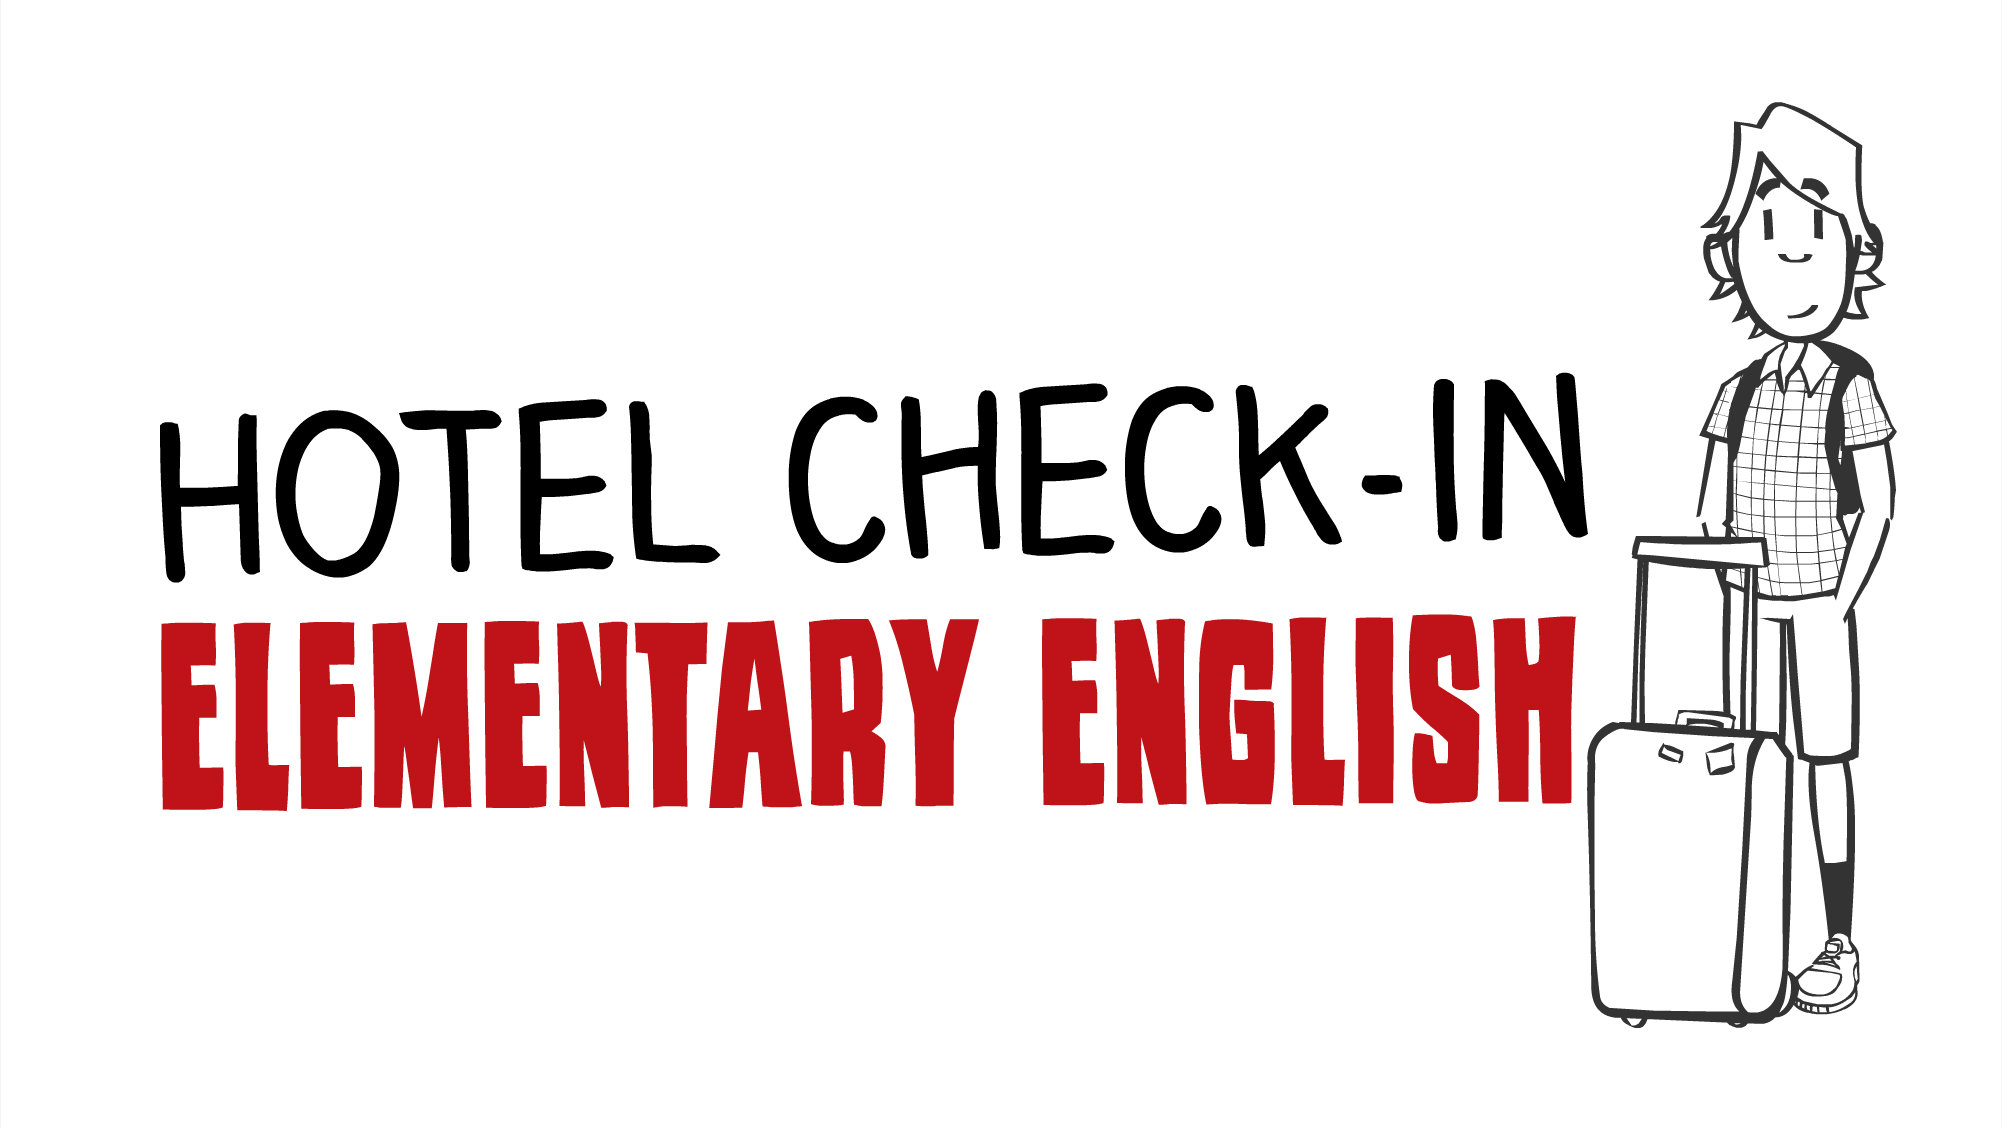 Заселение в отель - английский для начинающих - обучение английскому языку онлайн